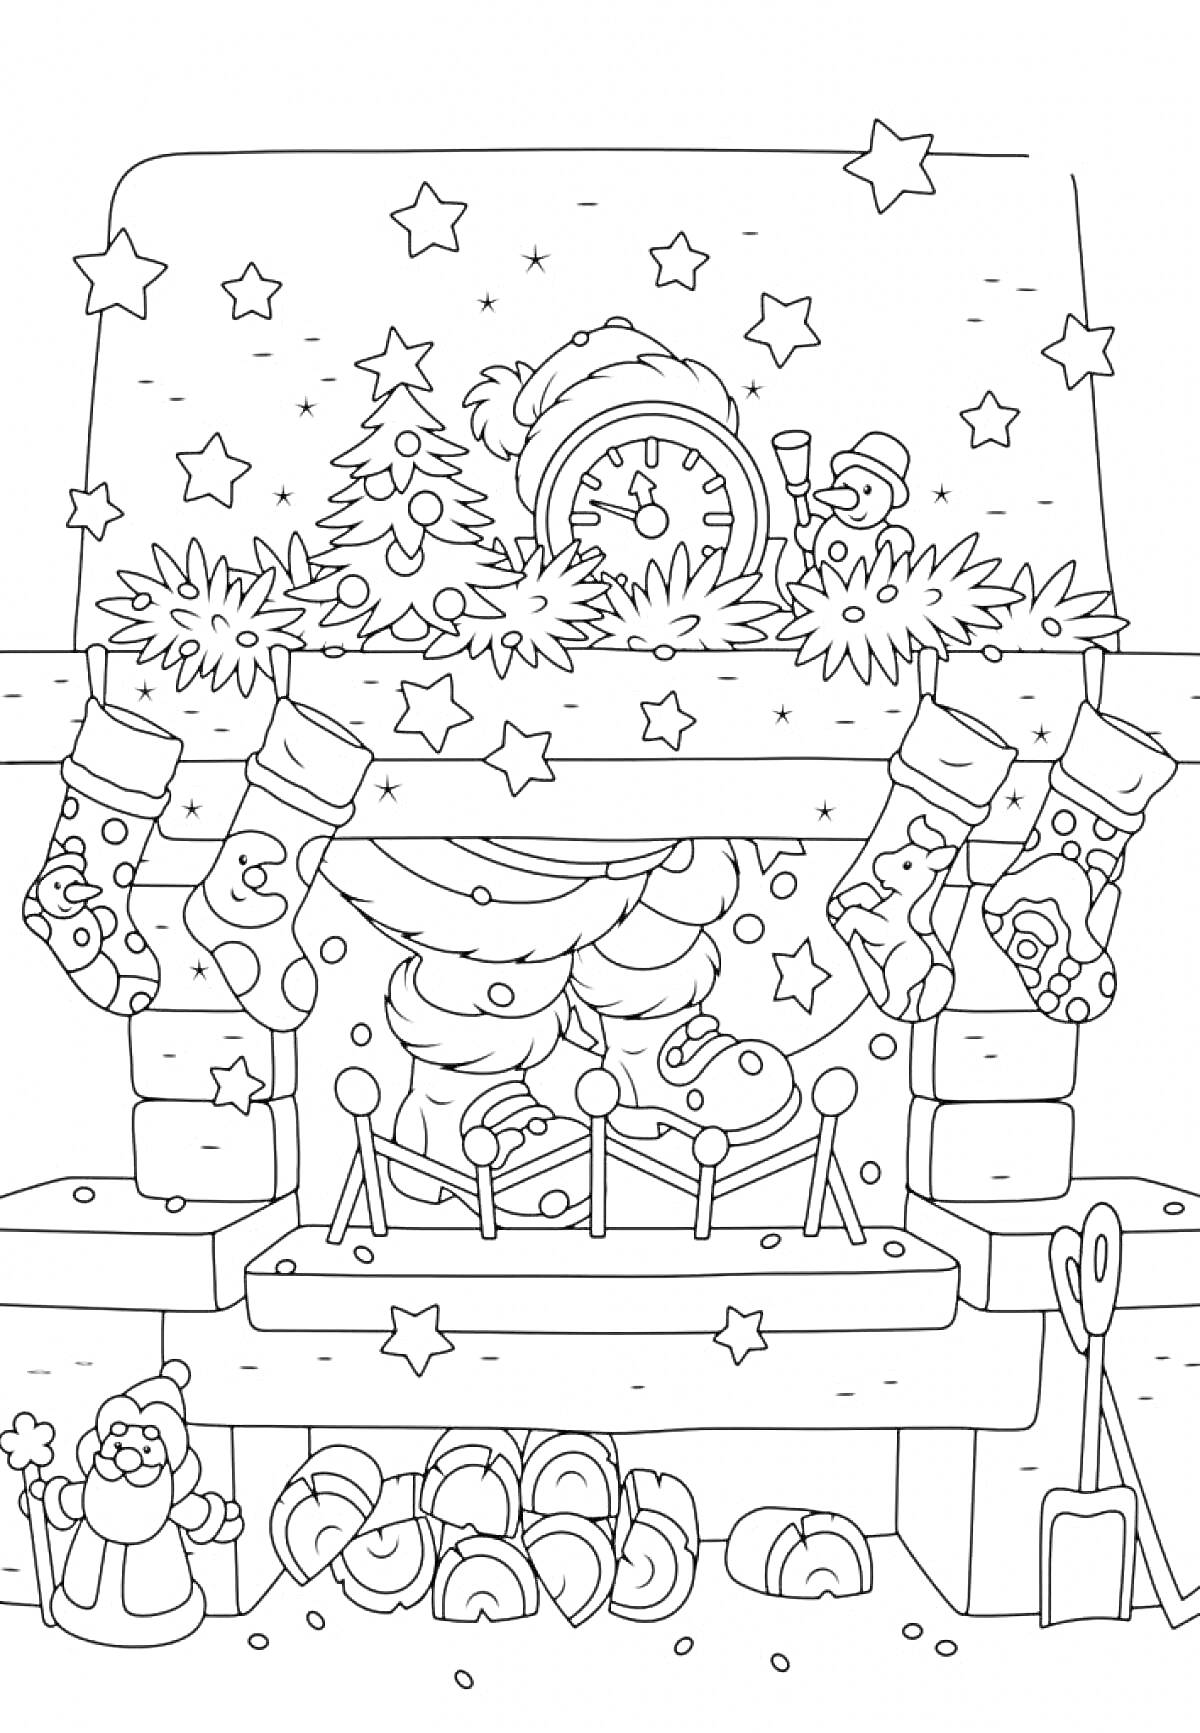 Раскраска Новогодняя ночь у камина с висящими носками, часами, ёлочкой, игрушками и снеговиком